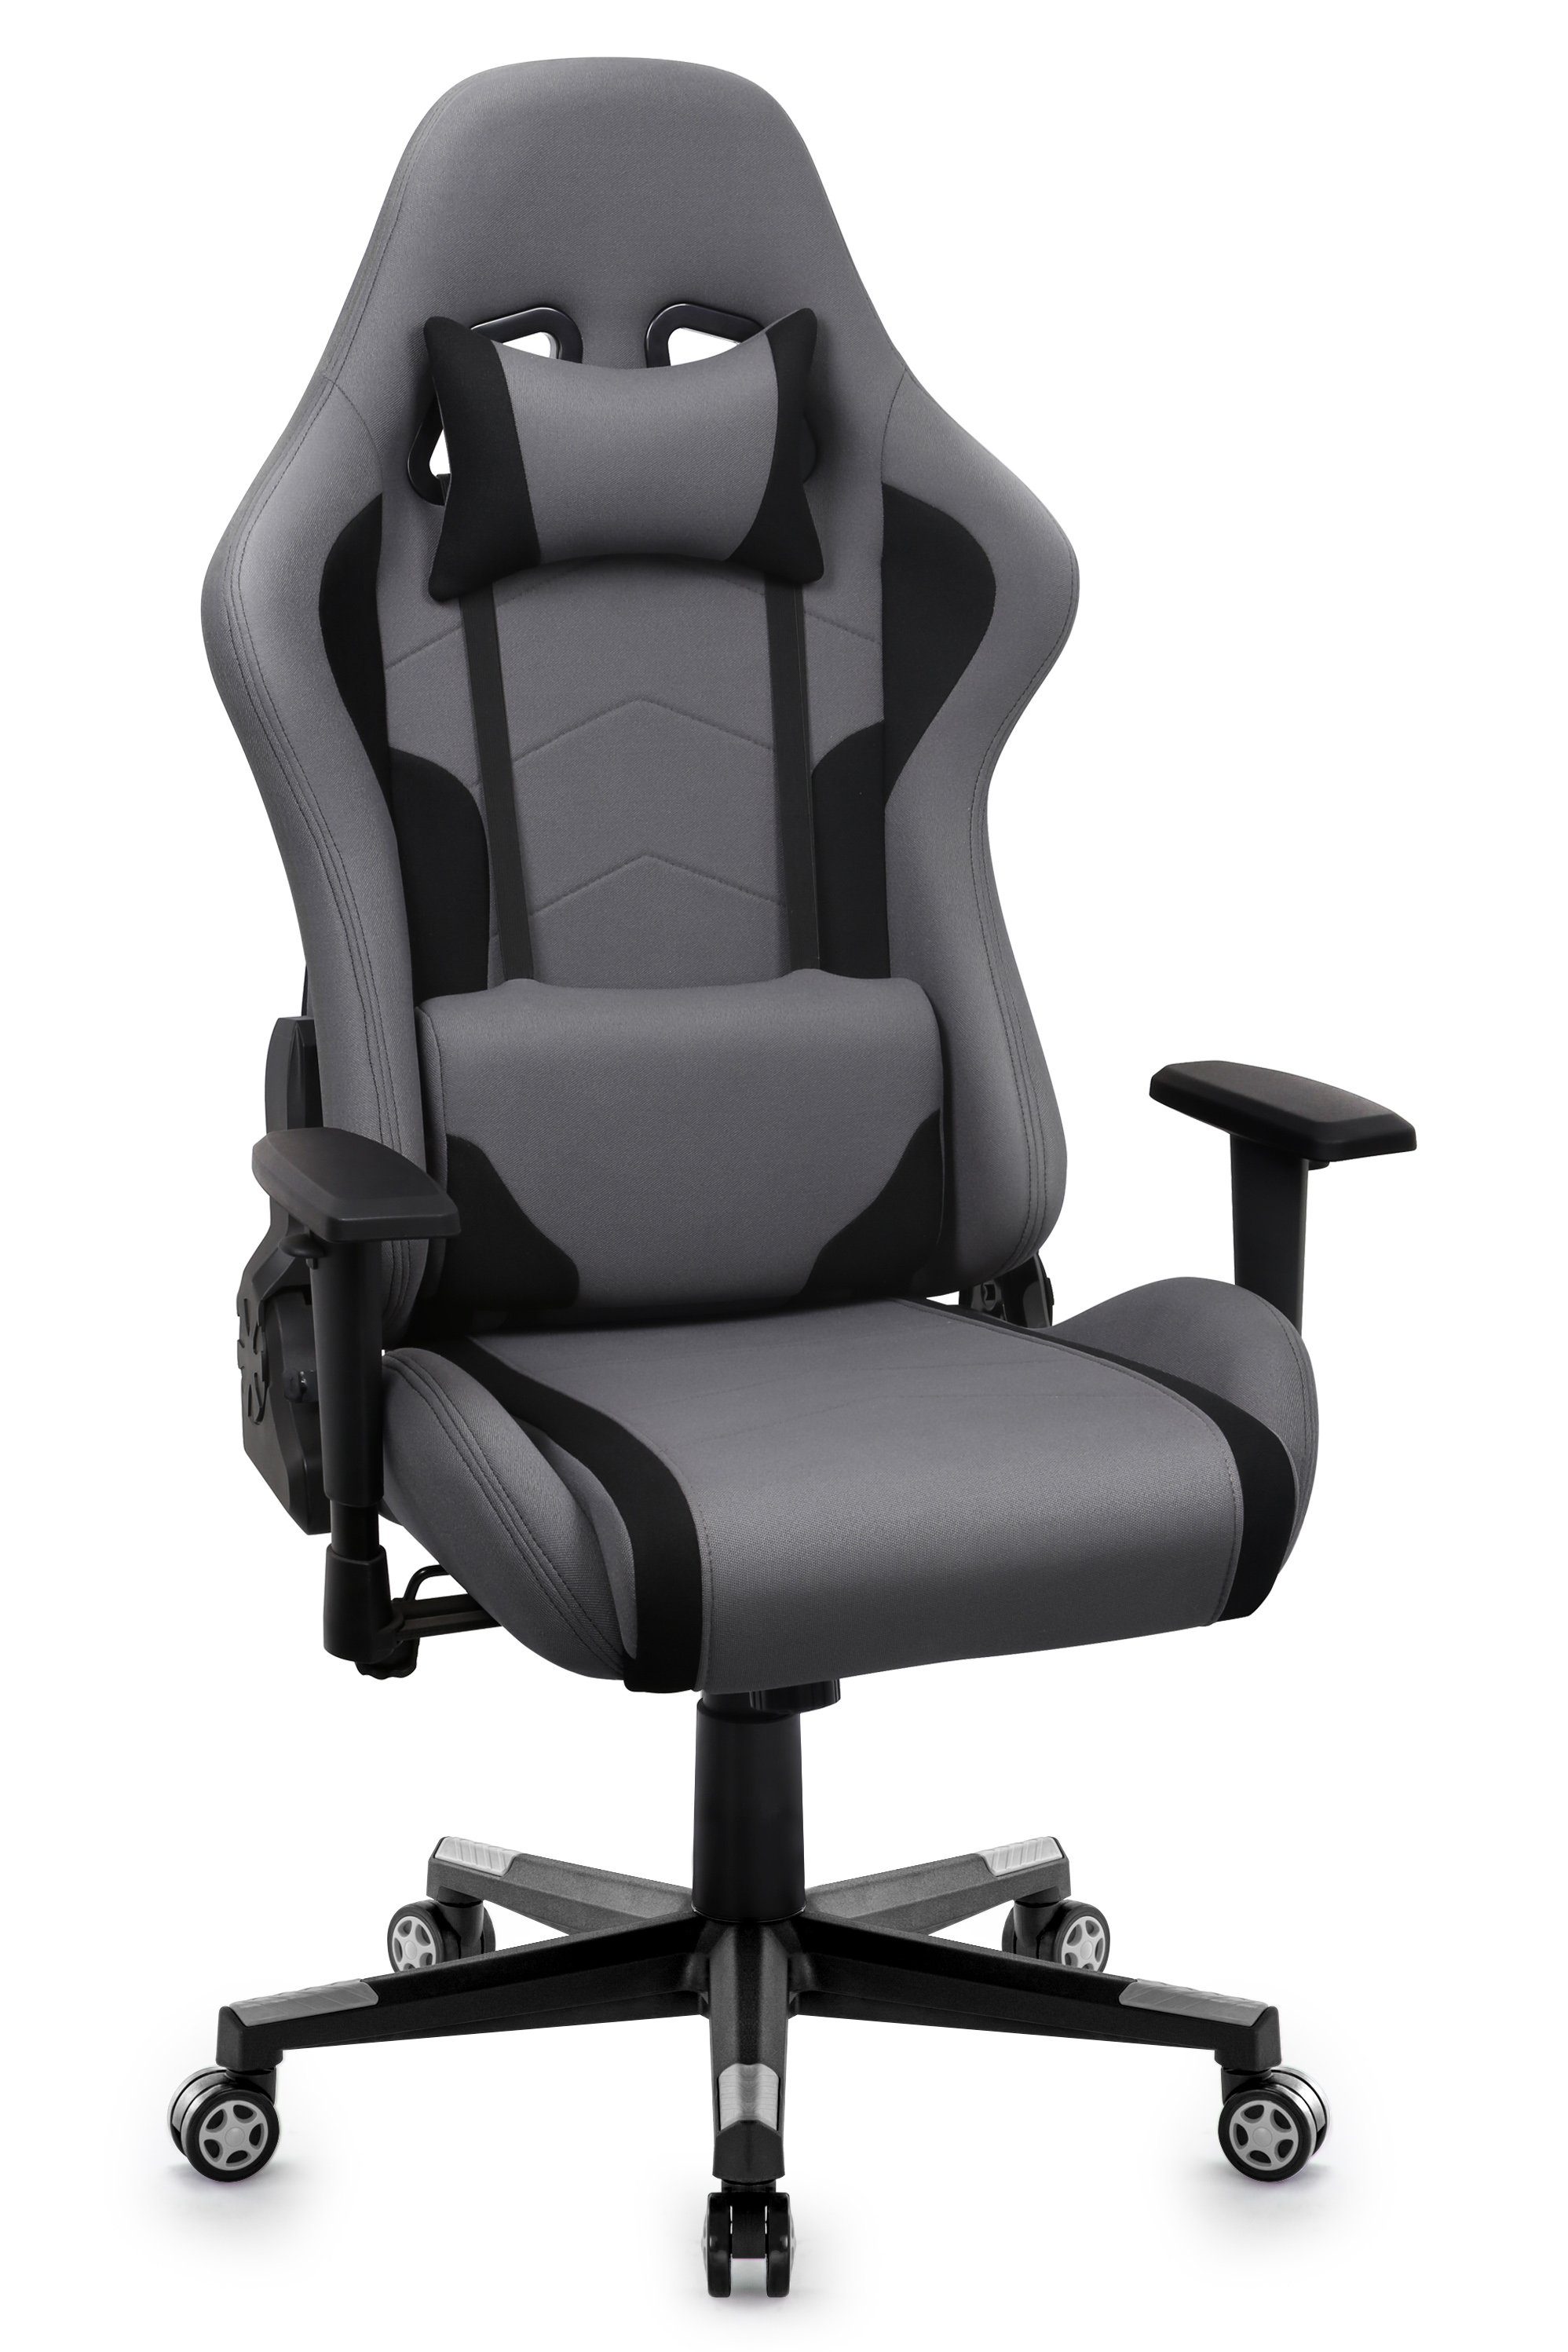 Intimate WM Heart Gaming Chair Ergonomischer Bürostuhl, Stoff Drehstuhl, Schreibtischstuhl mit Verstellbarer Armlehnen und Hoher Rückenlehne